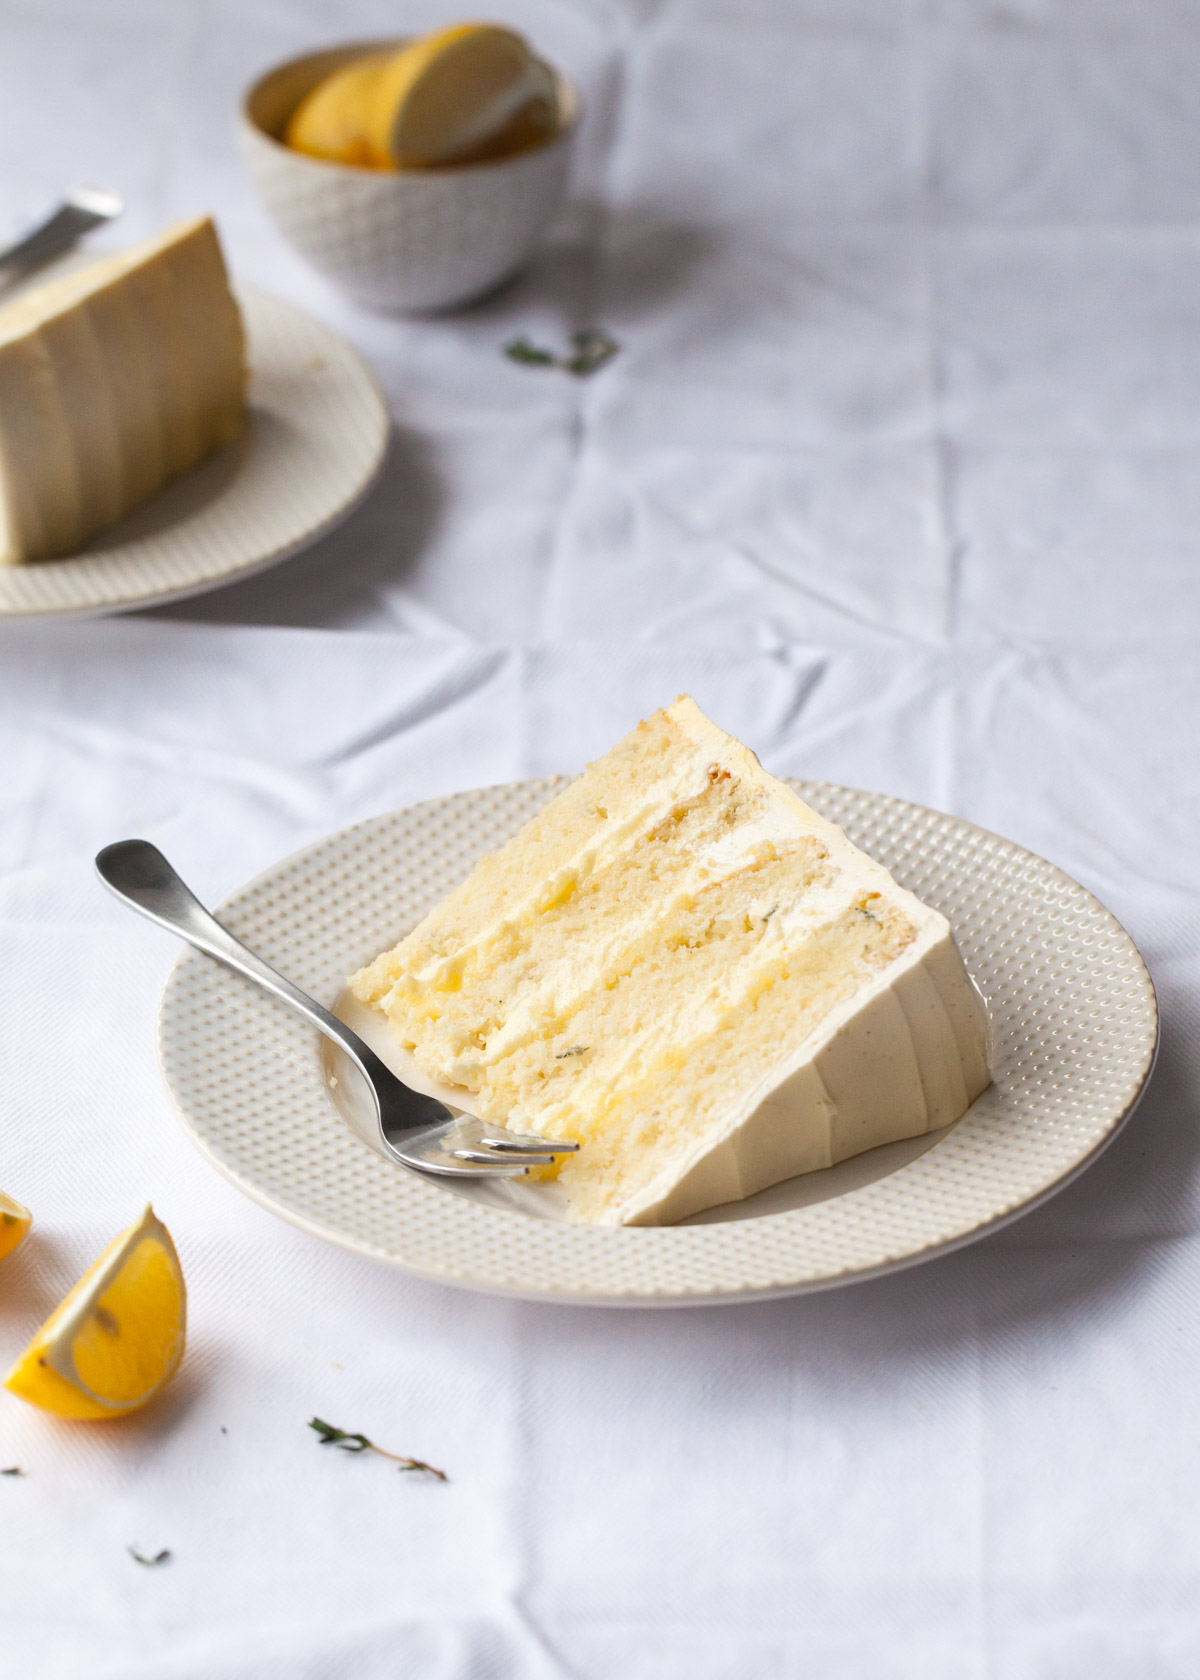 A slice of lemon thyme cake with lemon curd buttercream filling